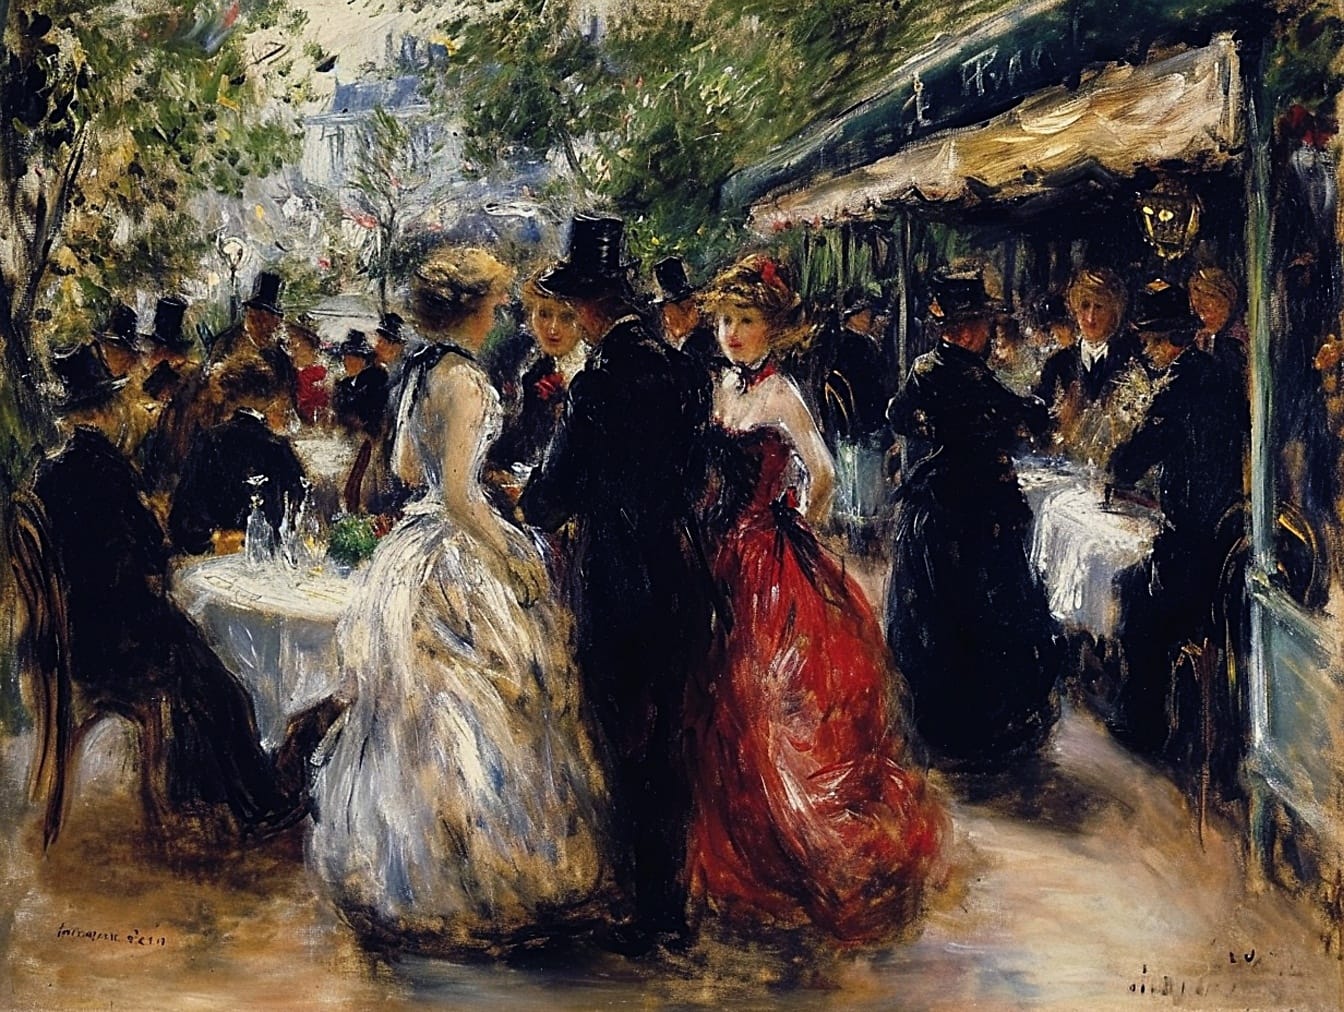 Öljymaalaus juhlapukuisesta ihmisryhmästä ravintolassa, joka kuvaa 19-luvun muotia